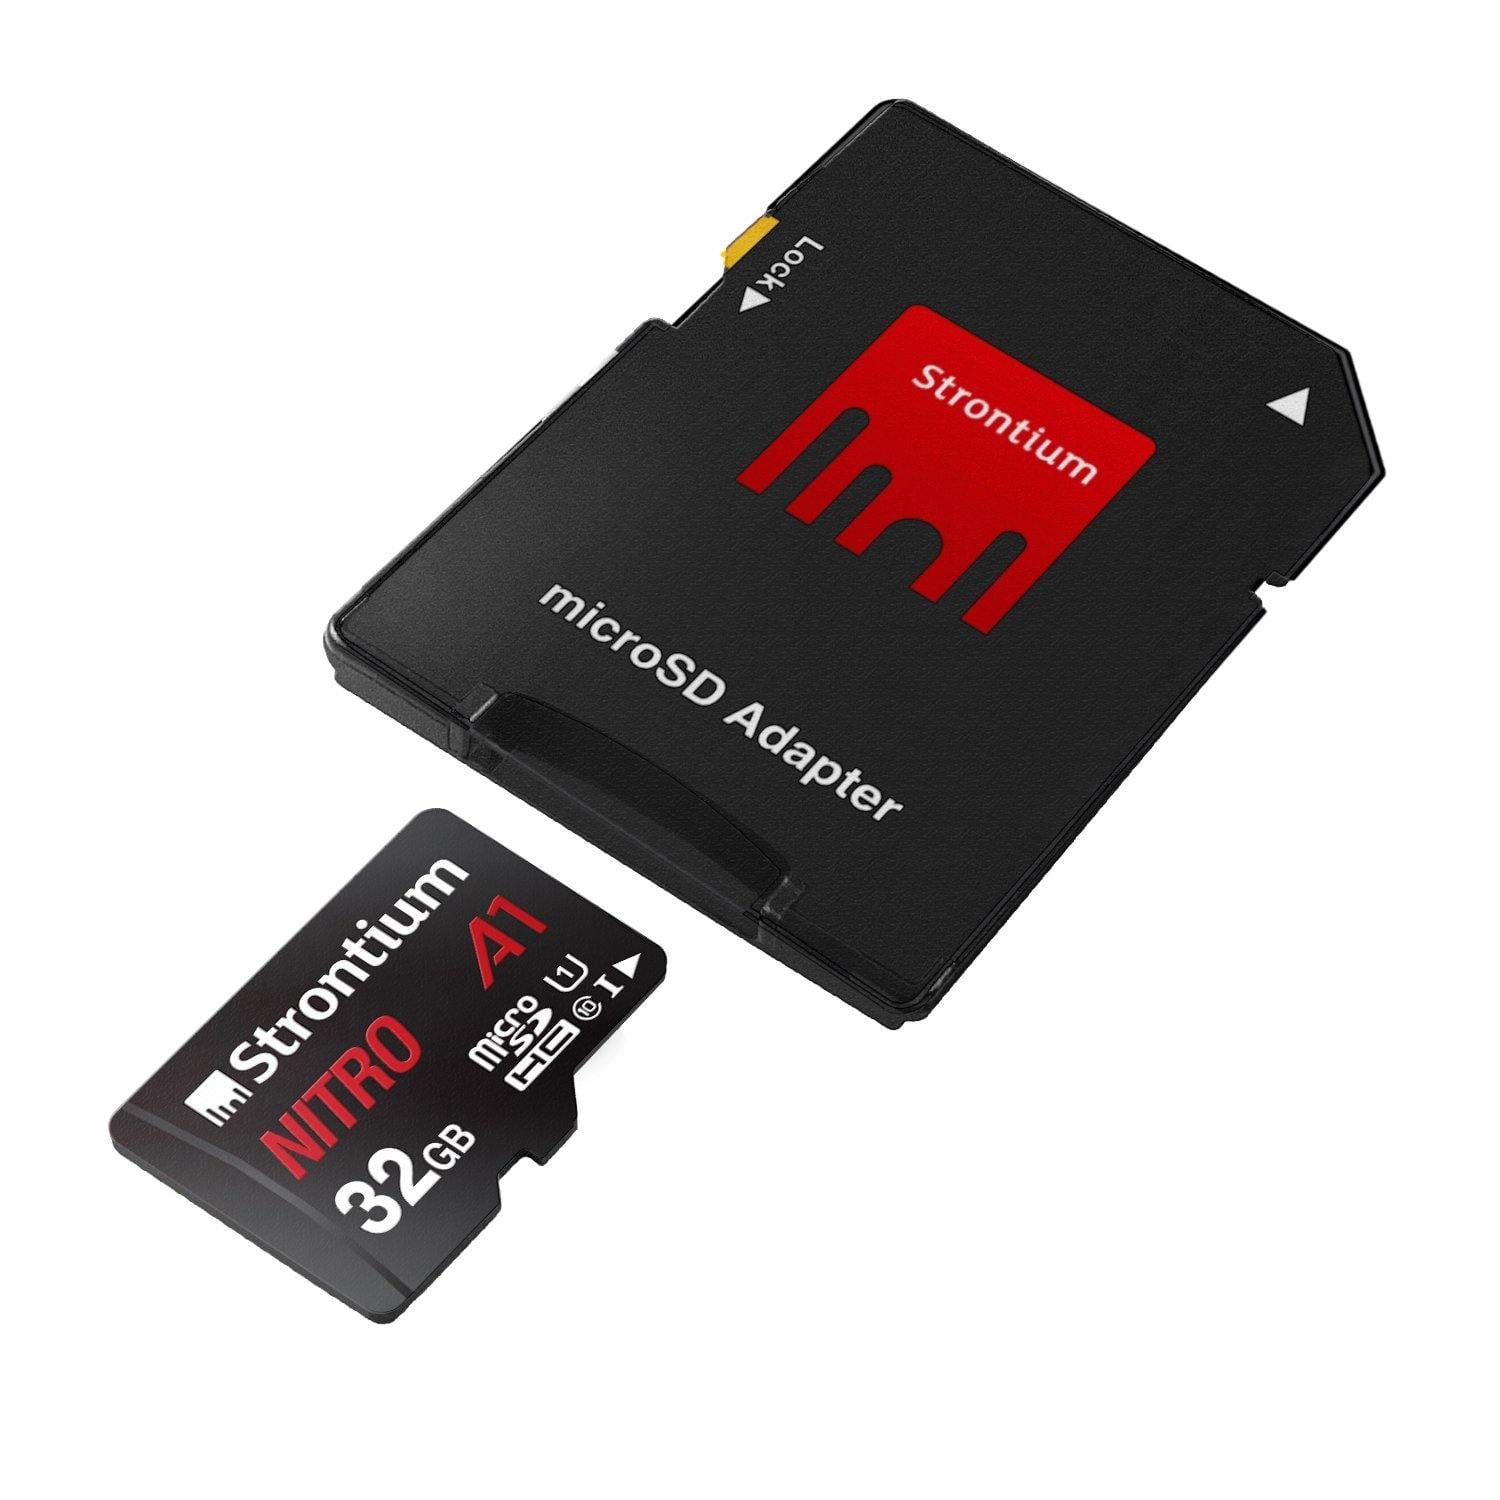 Strontium Nitro A1 32GB Micro SDHC Memory Card 100MB/s A1 UHS-I U1 Class 10-Memory Cards-dealsplant